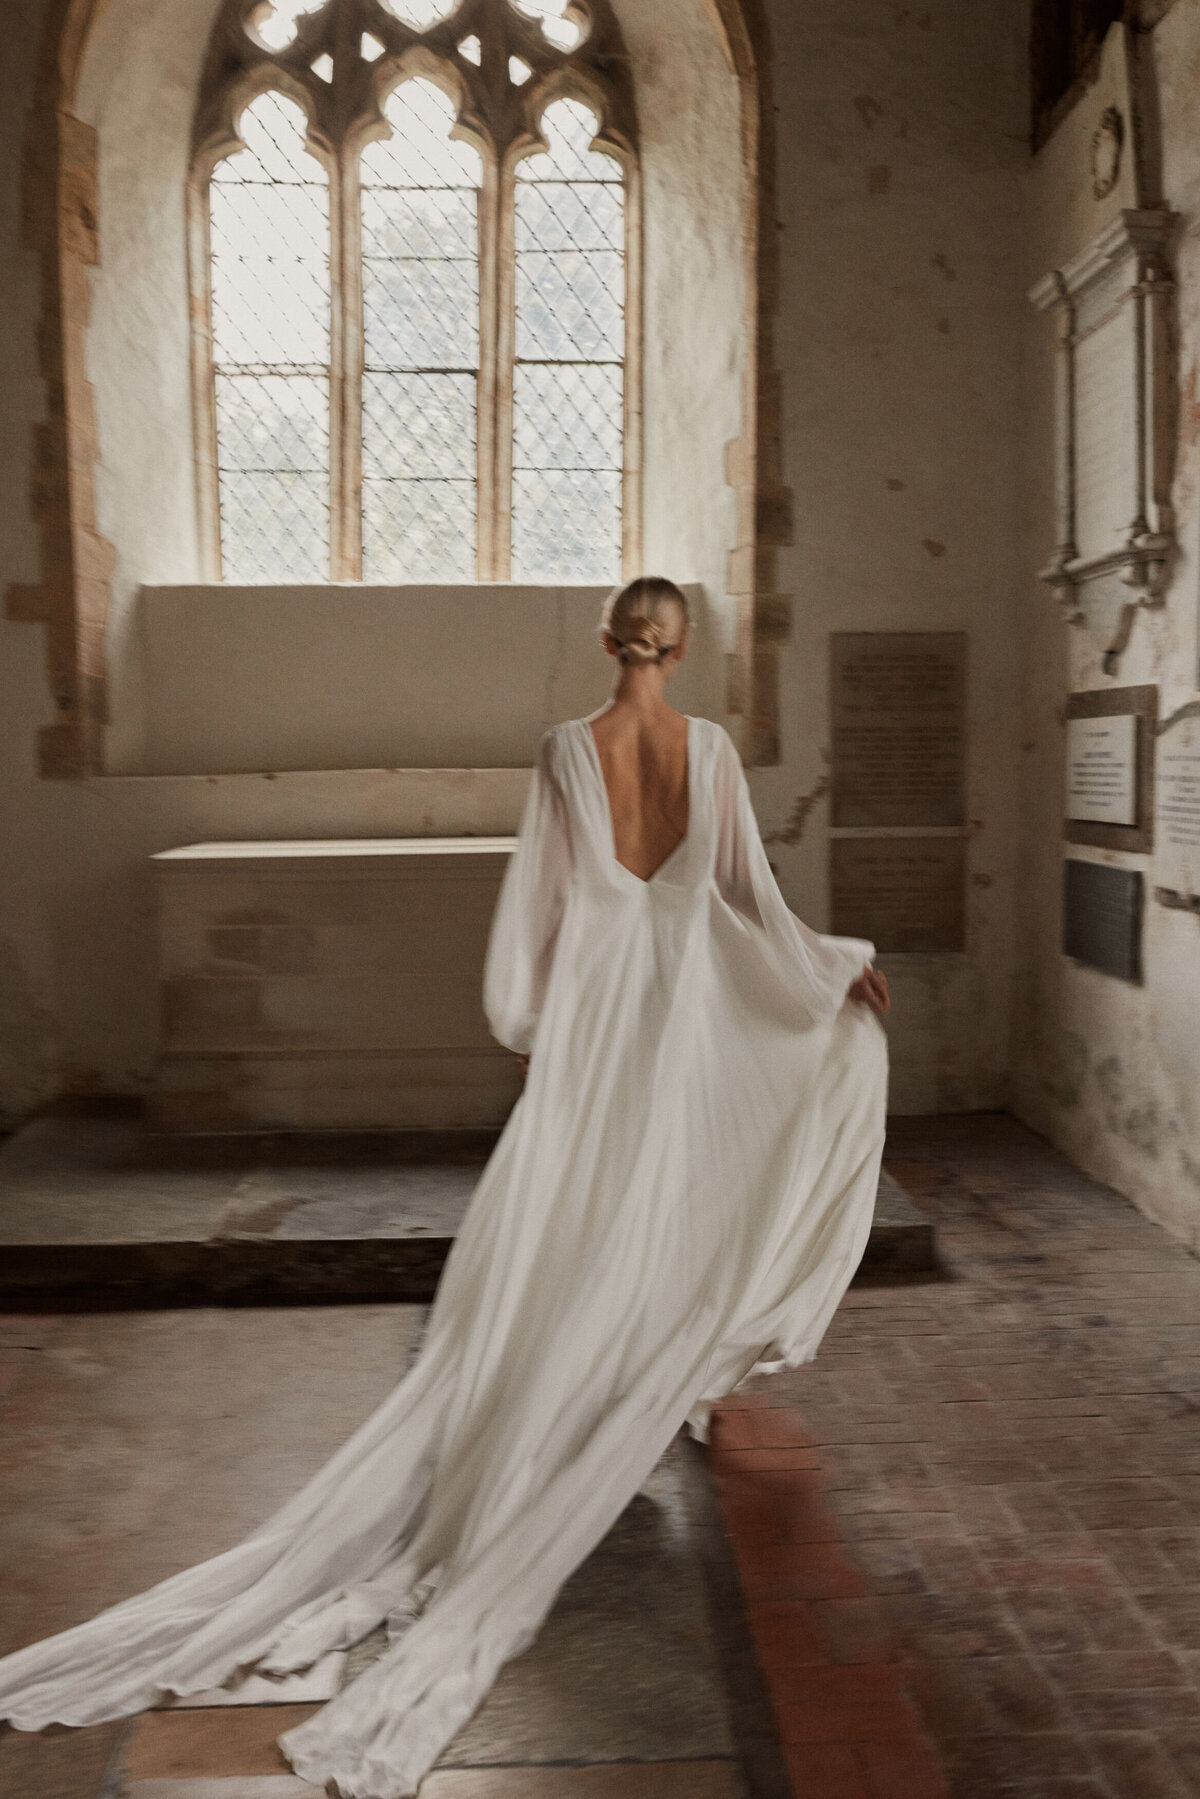 Flowing silk wedding dress with deep v back design by Luna Bea, British Bridal Designer